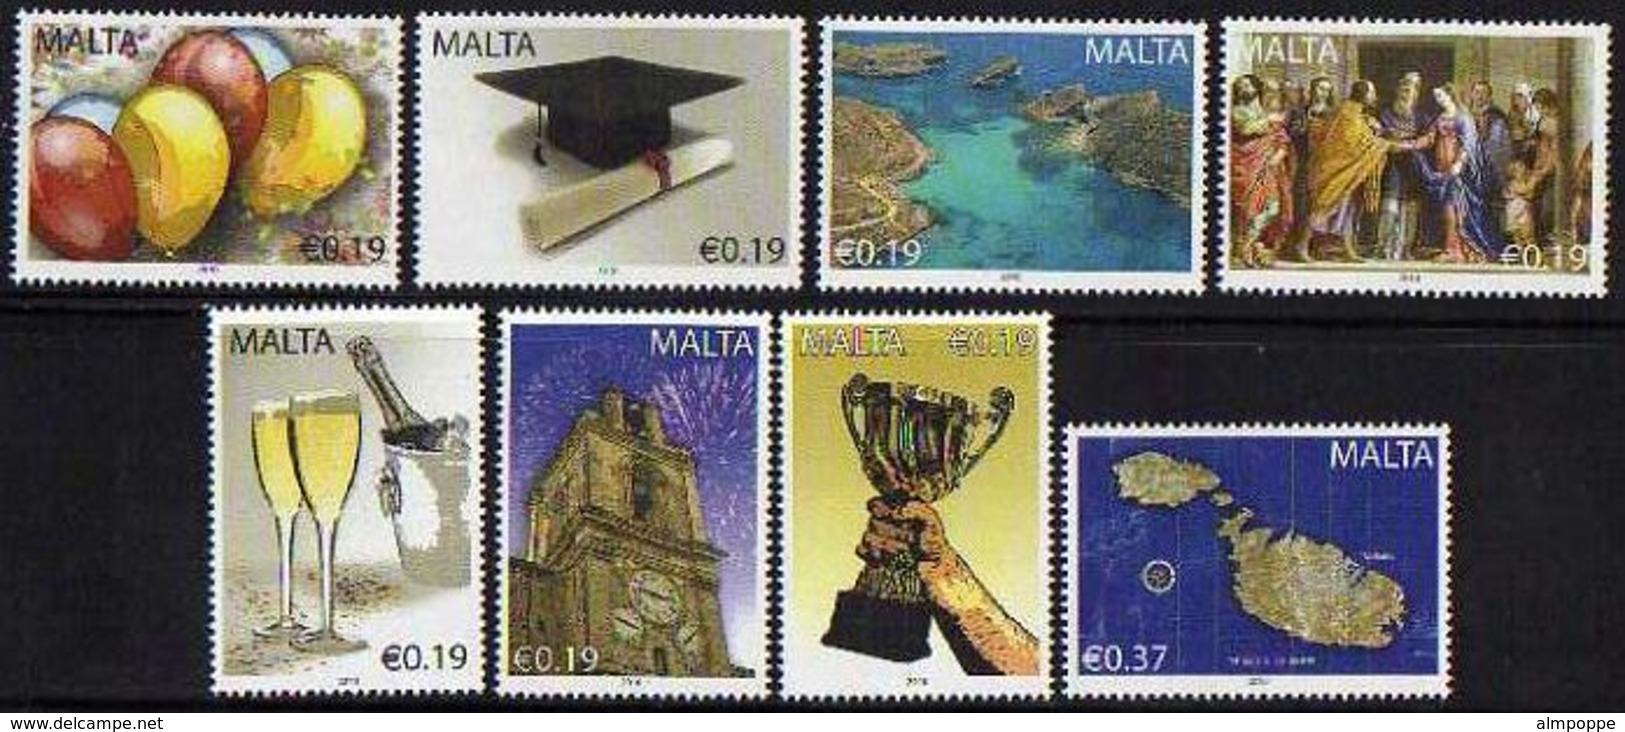 Ref. M1-V2010-05 MALTA 2010 MAPS, OCCASIONS - EVENTS, SET MINT MNH 8V - Malta